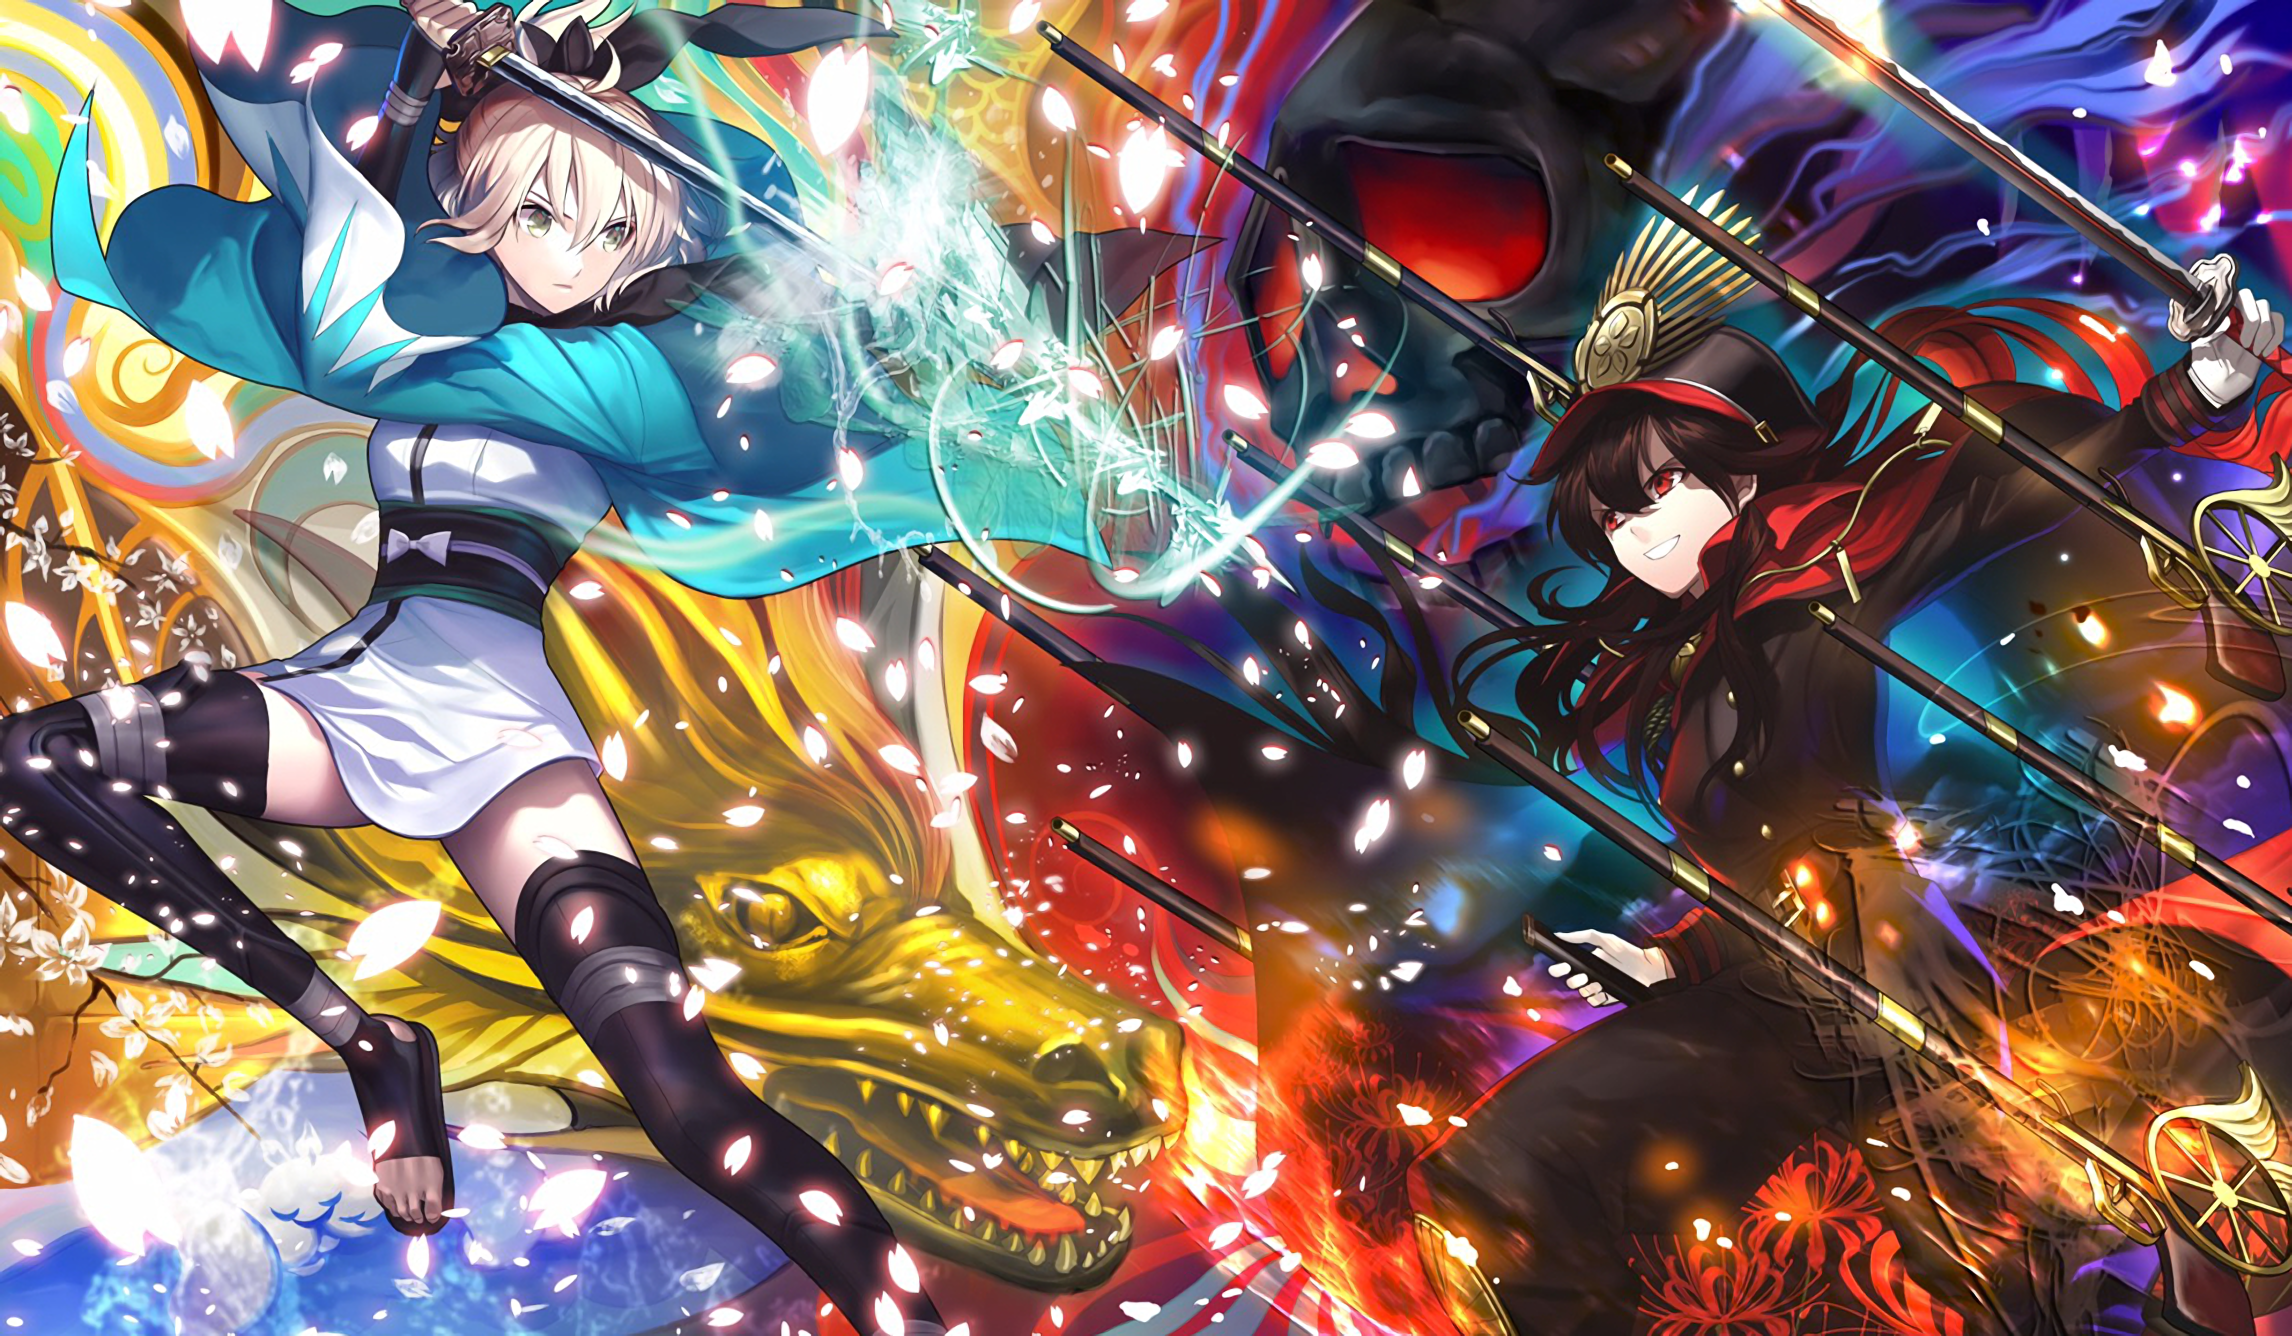 Fate Grand Order, Saber, Sakura Saber, Oda Nobunaga, - Fate Grand Order Wallpaper 1080p - HD Wallpaper 